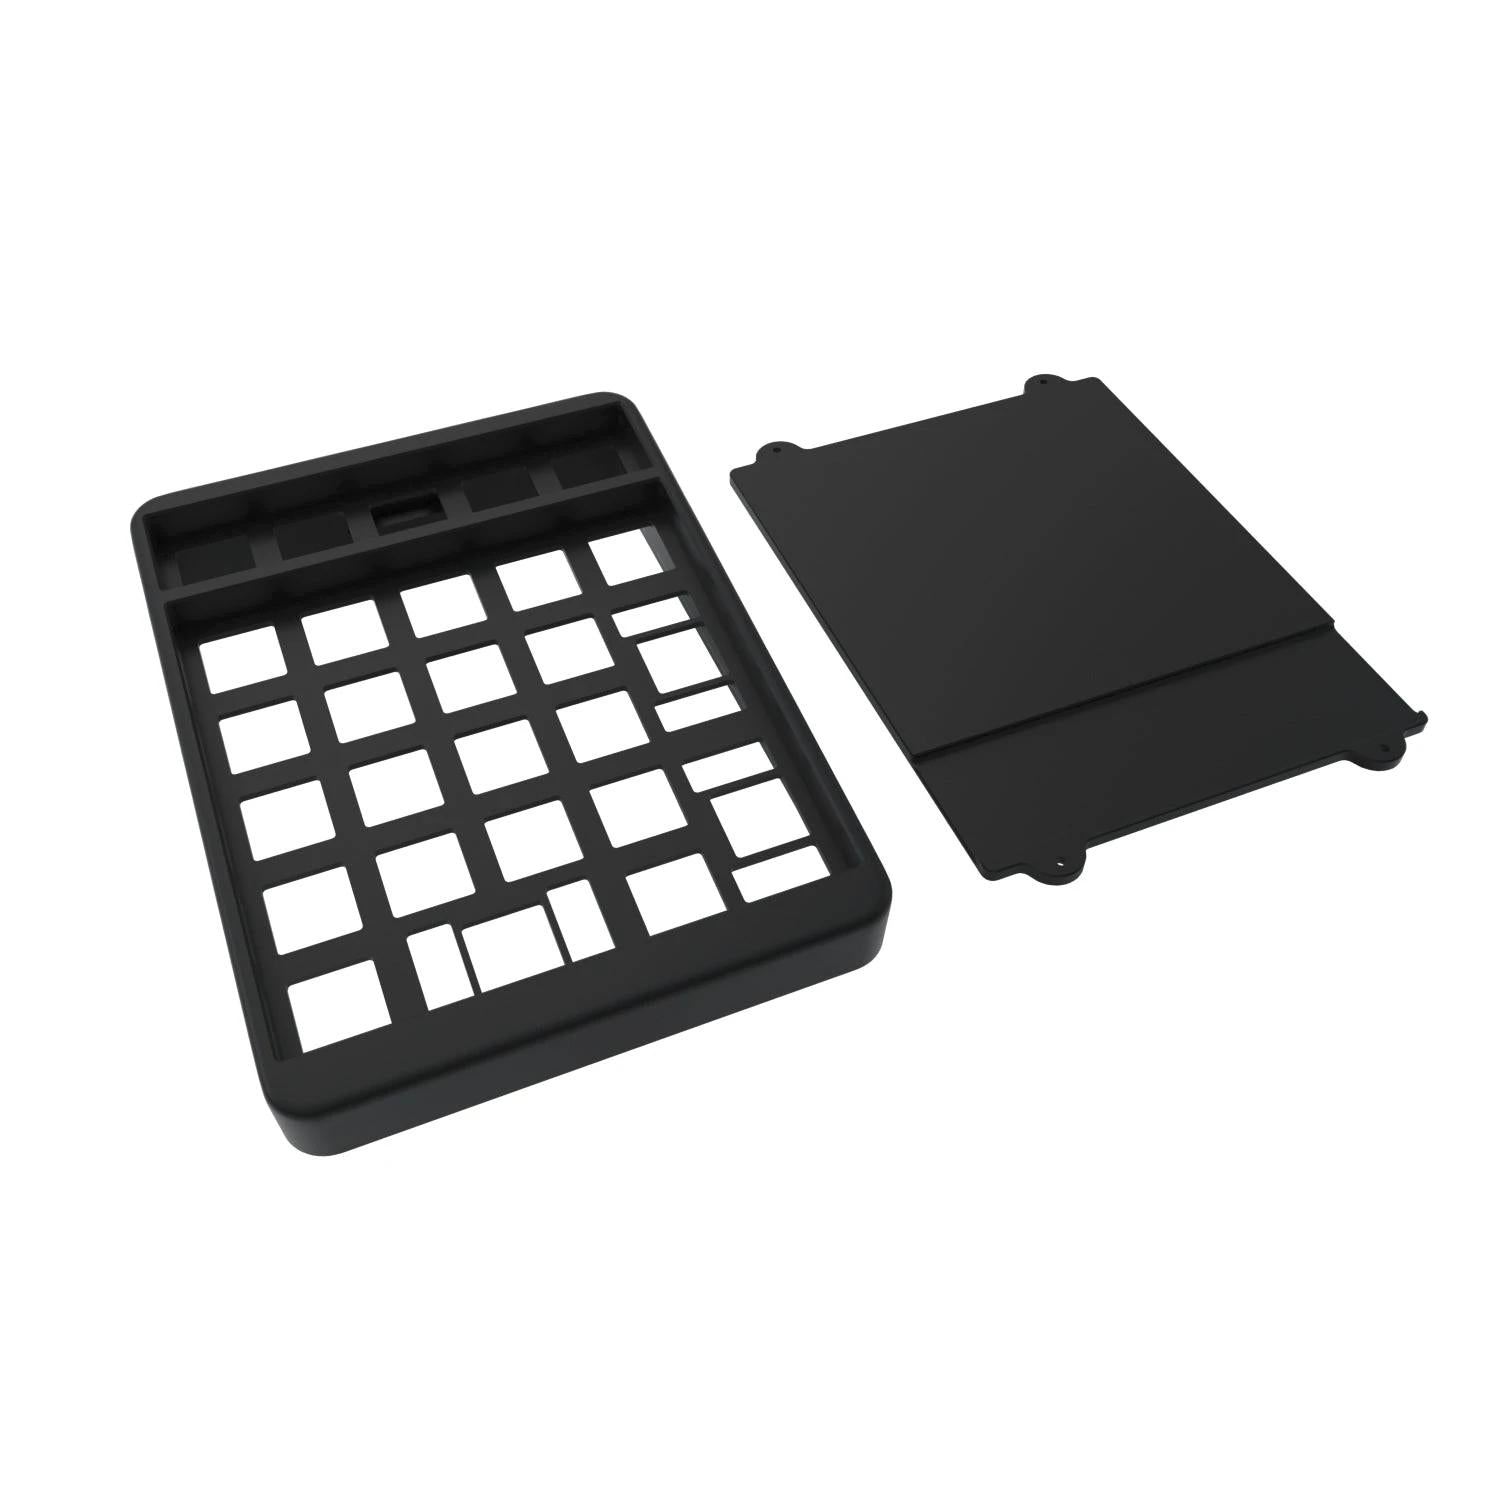 Montex Pad RGB Numpad kit